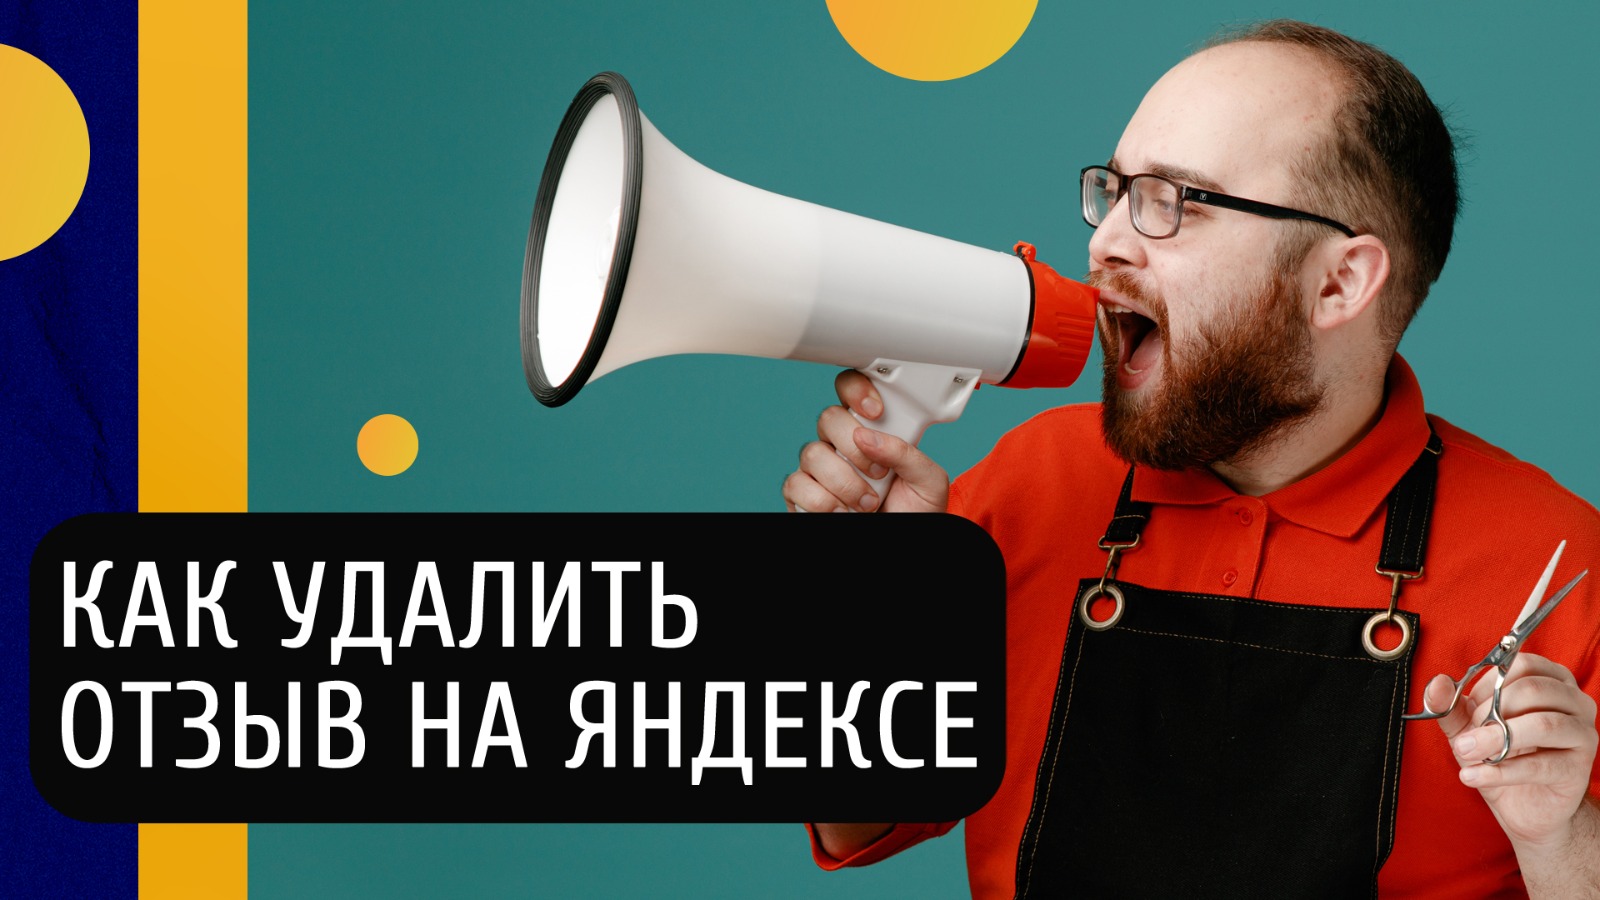 Как удалить негативные отзывы о компании в Яндексе и сохранить репутацию?